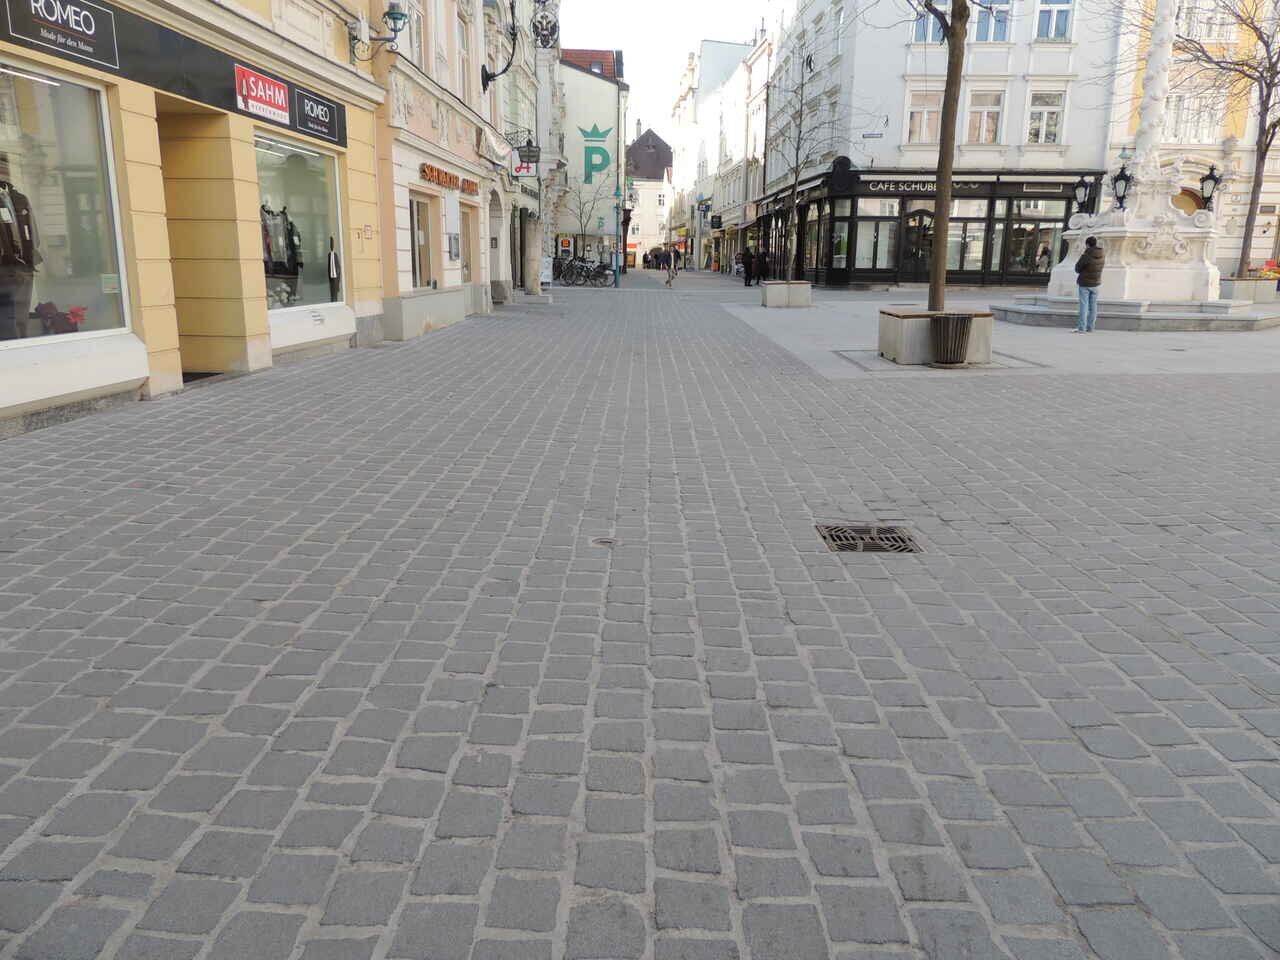 St. Pölten - Herrenplatz4